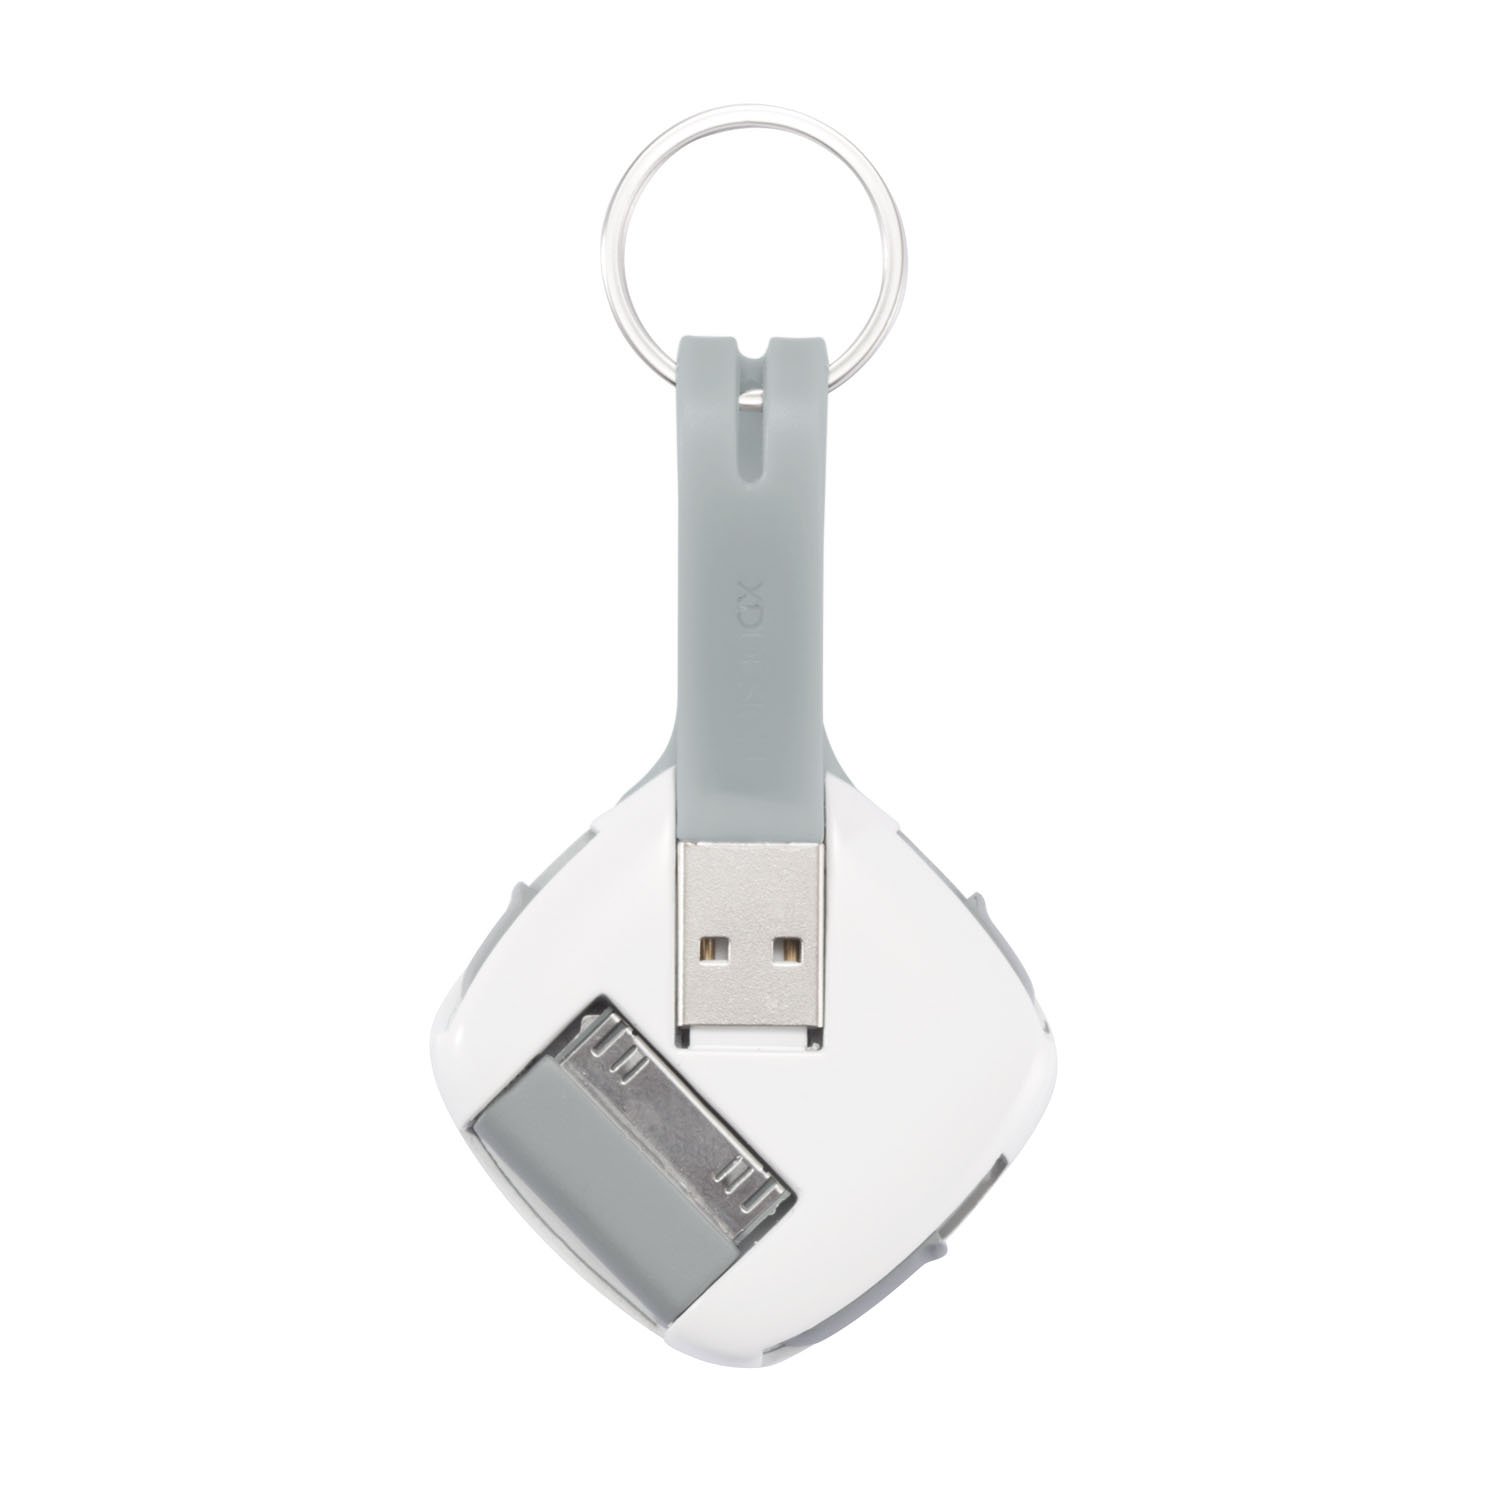  USB- Quatro